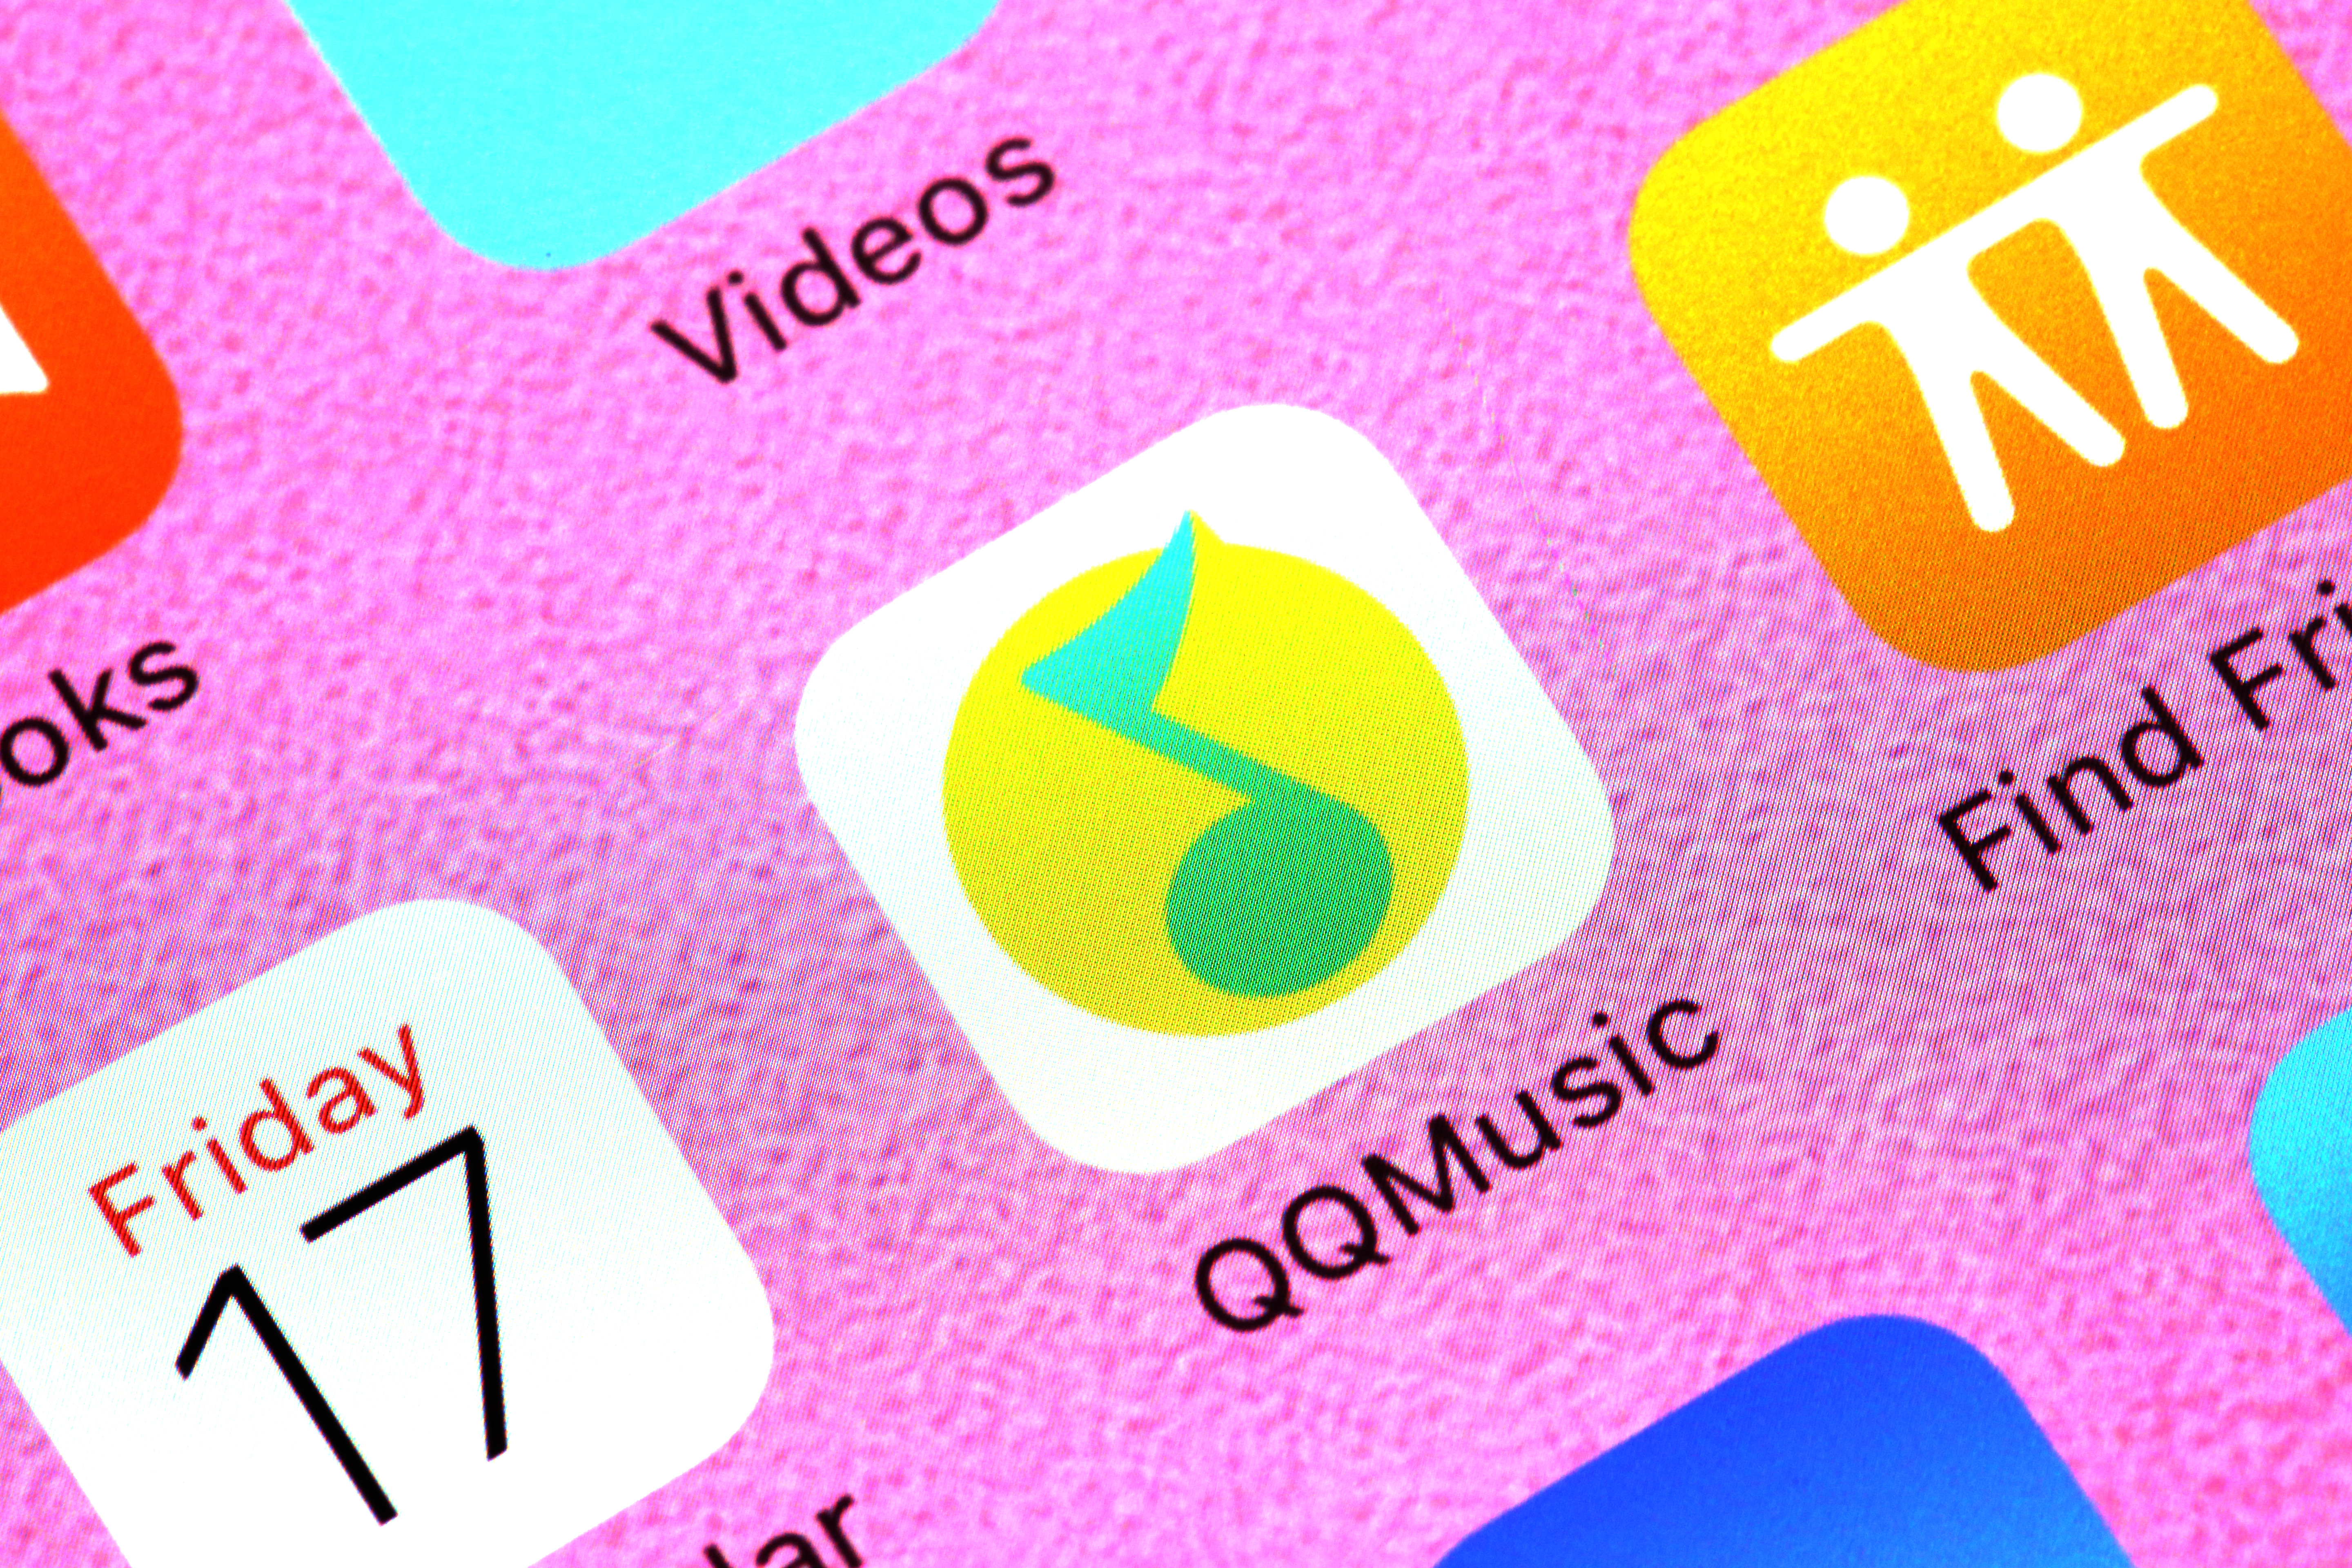 Tencent Music Entertainment Q3 revenue surpasses USD 1 billion